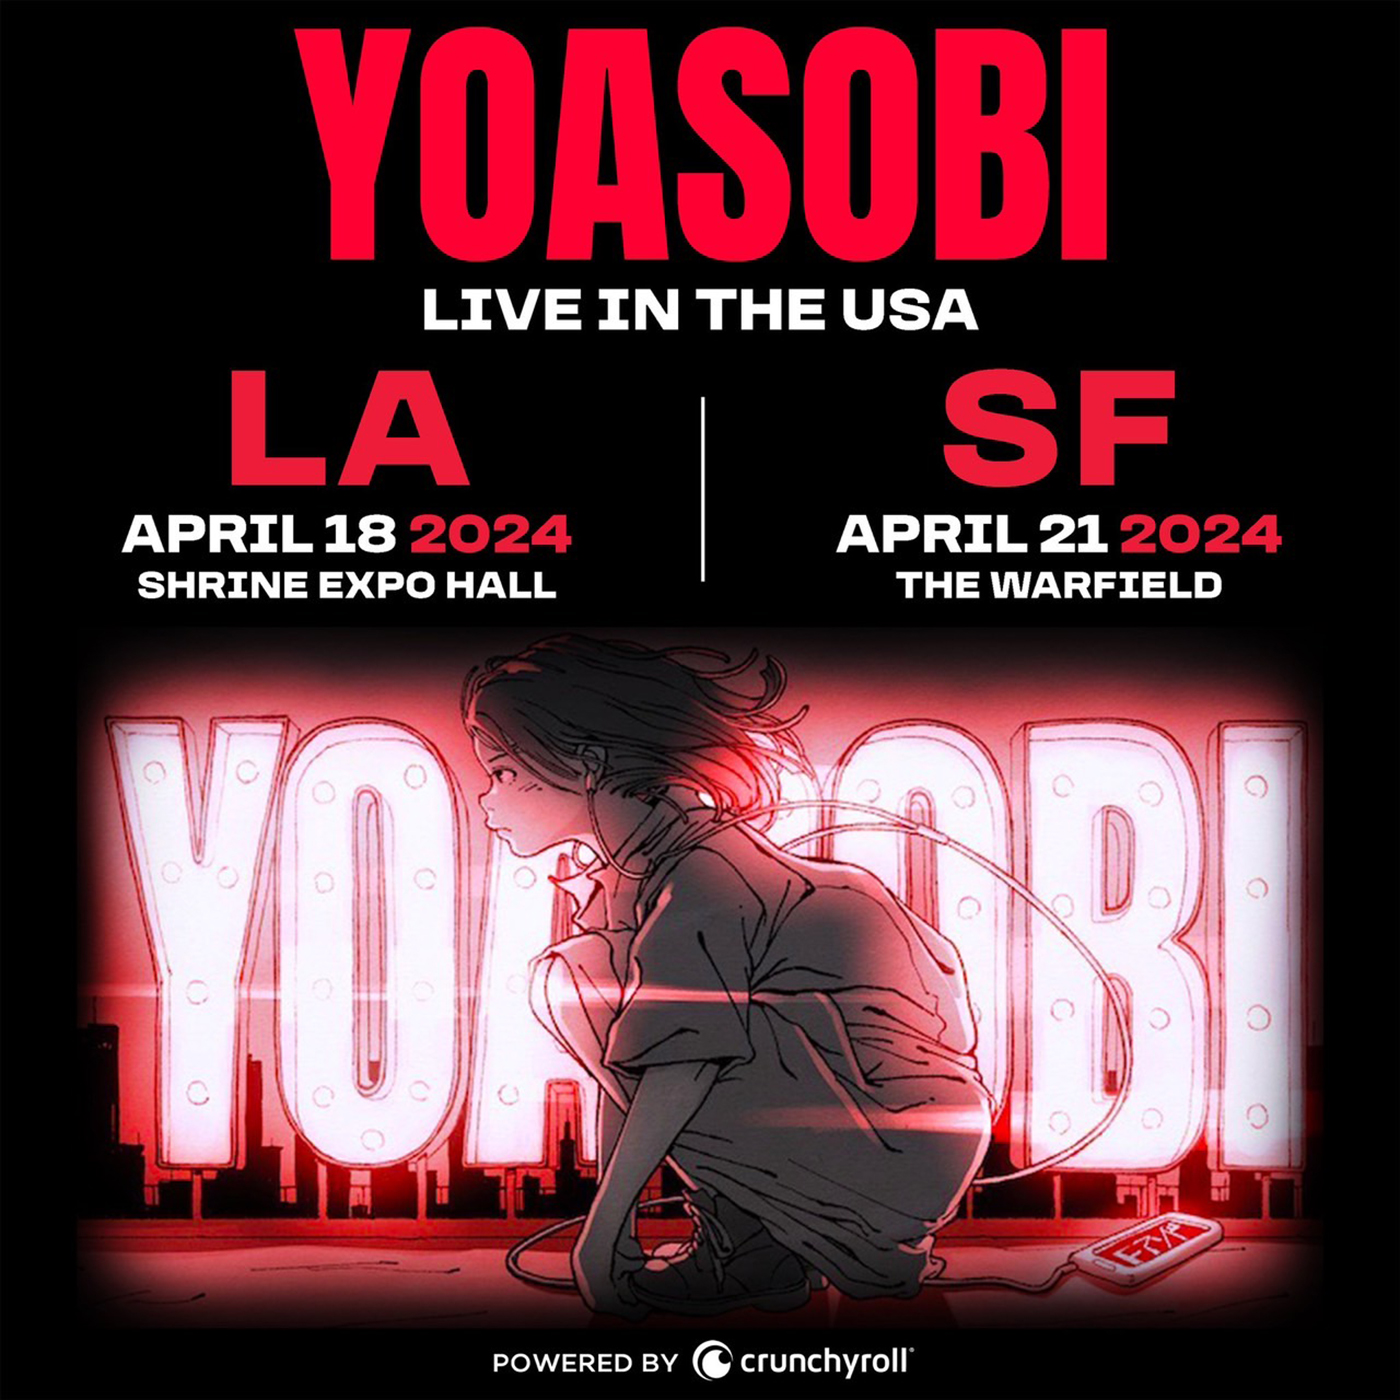 YOASOBI初アメリカ単独公演のチケットが販売開始から30分で即完売